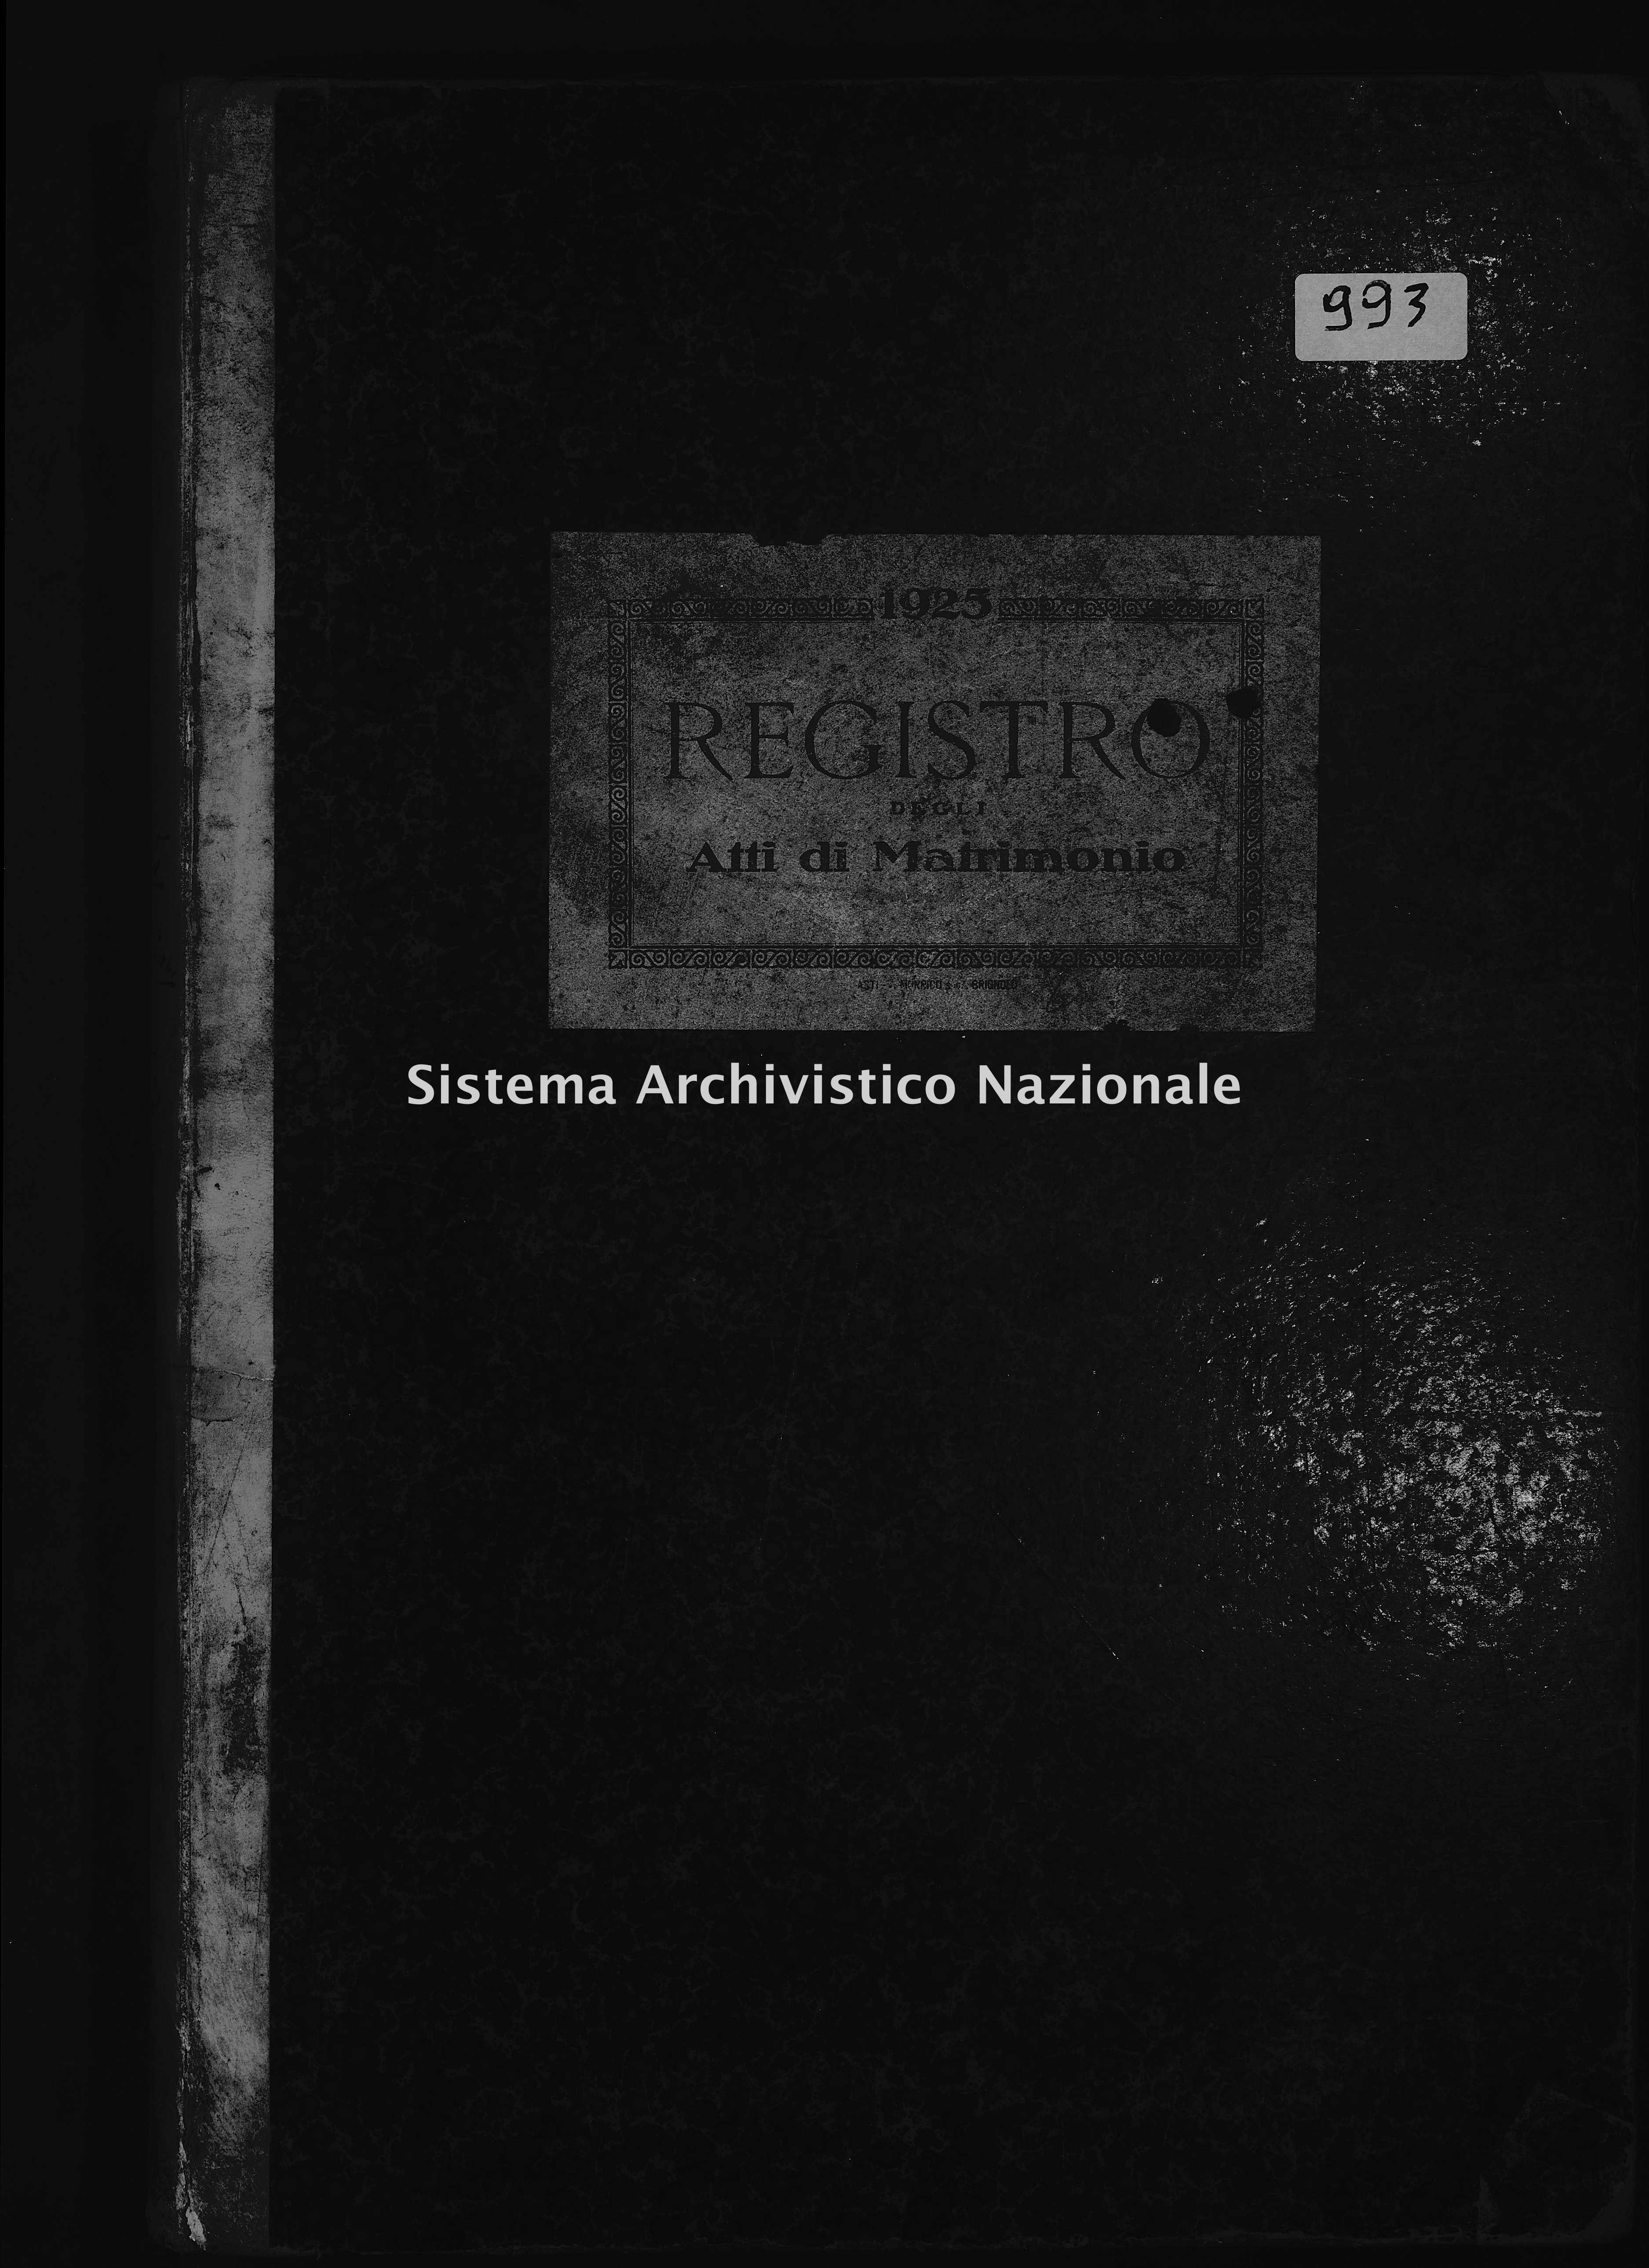 Archivio di stato di Asti - Stato civile del territorio di Asti - Asti - Matrimoni - 1925 - 993, Parte 1 -